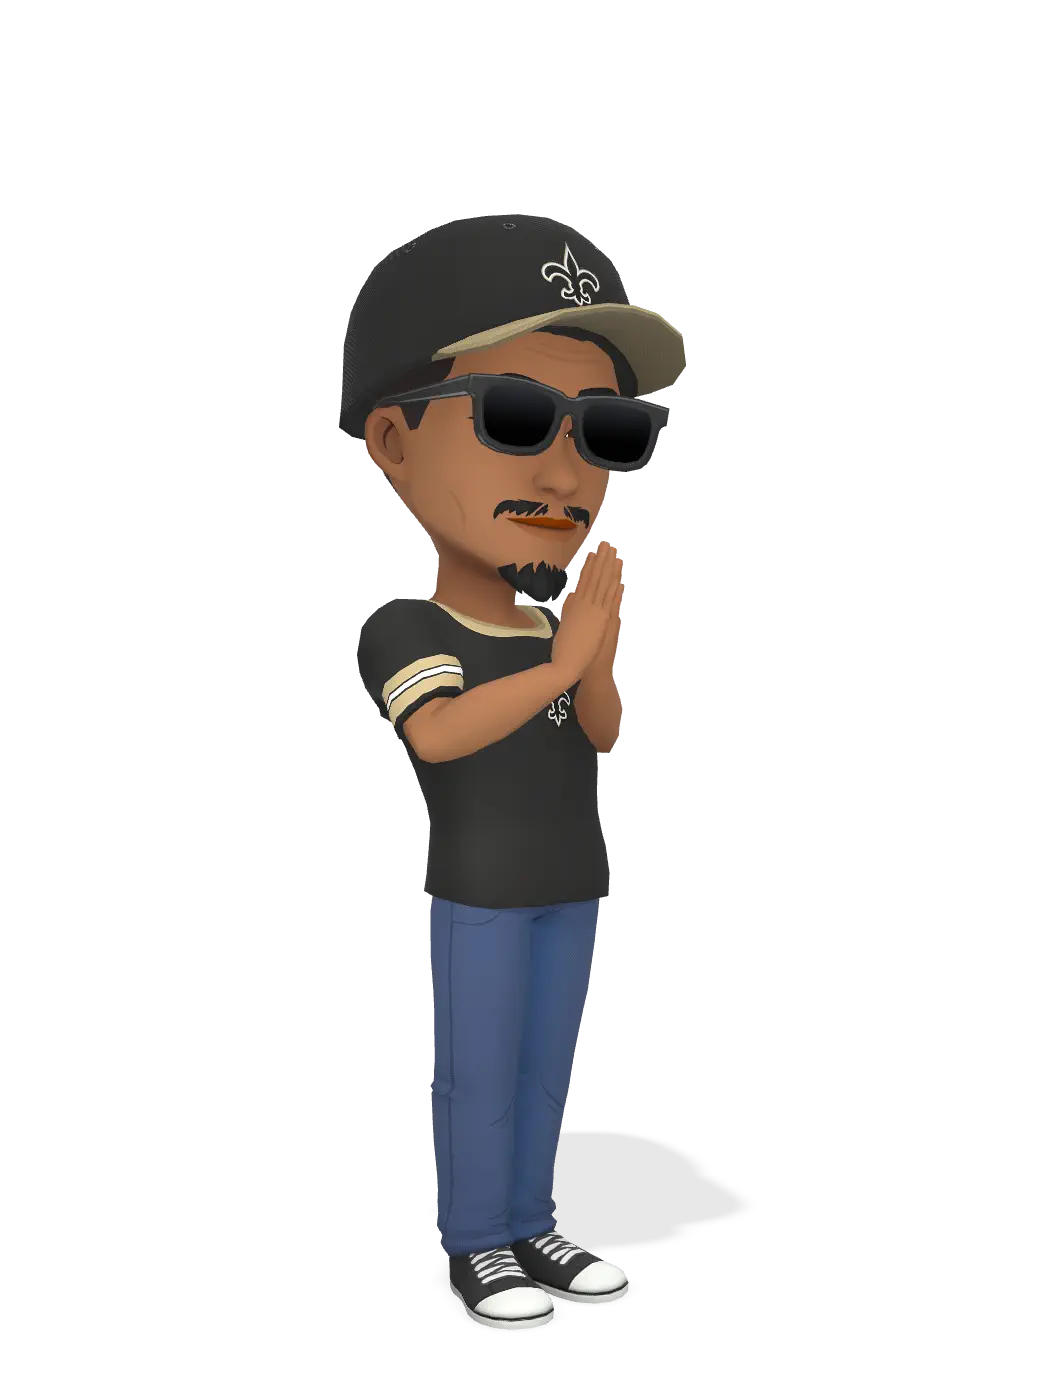 3D Bitmoji for t.jones504 avatar